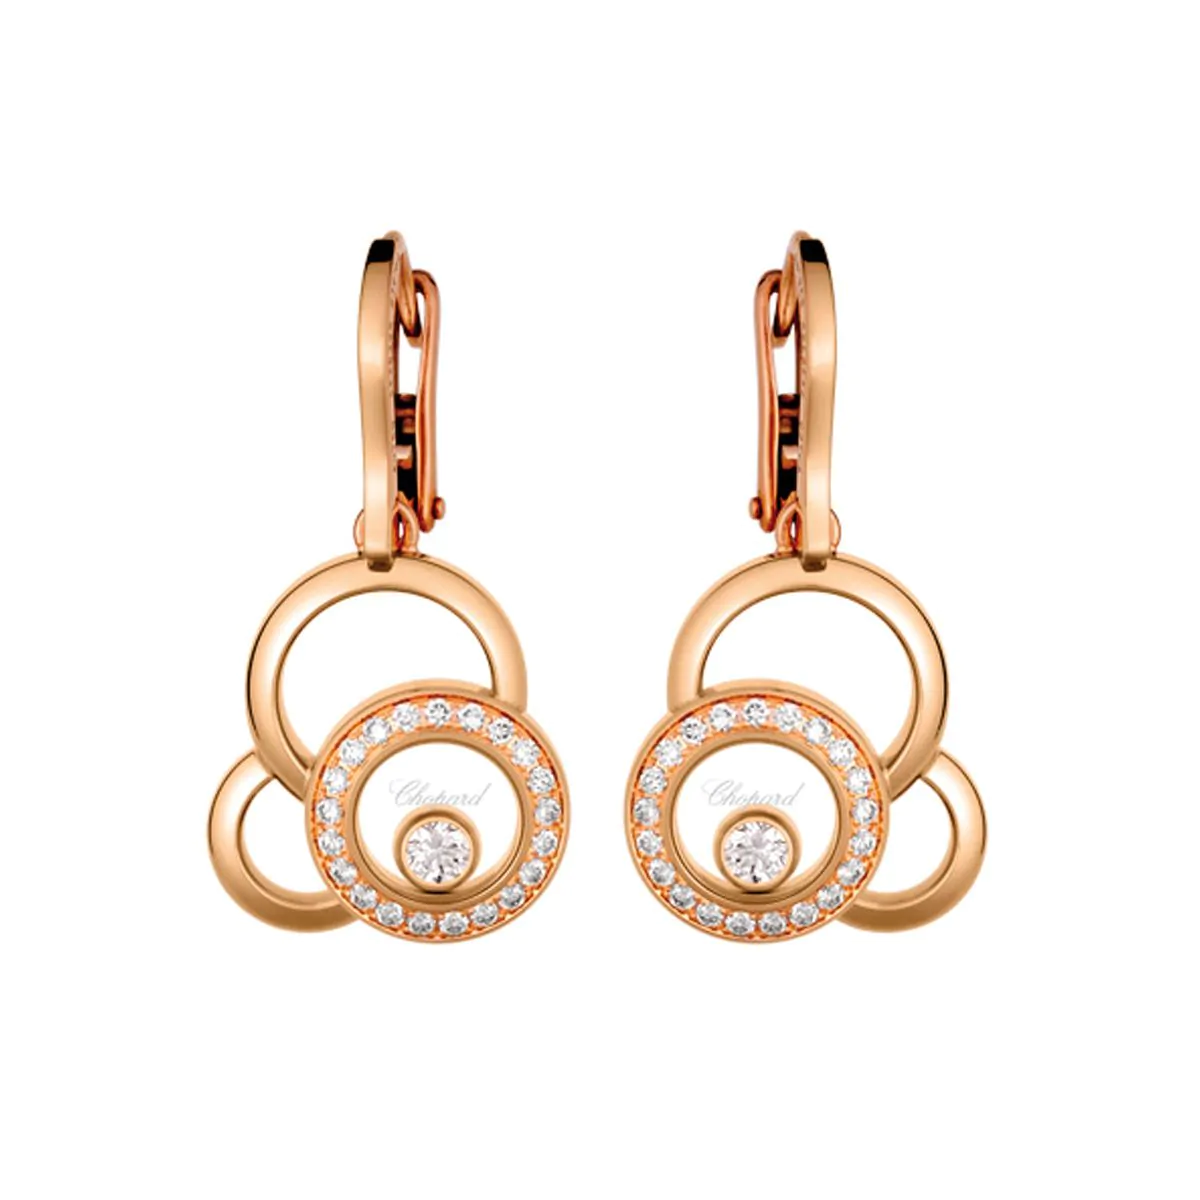 Chopard Happy Dreams 18ct Rose Gold & Diamond Earrings 839769-5002